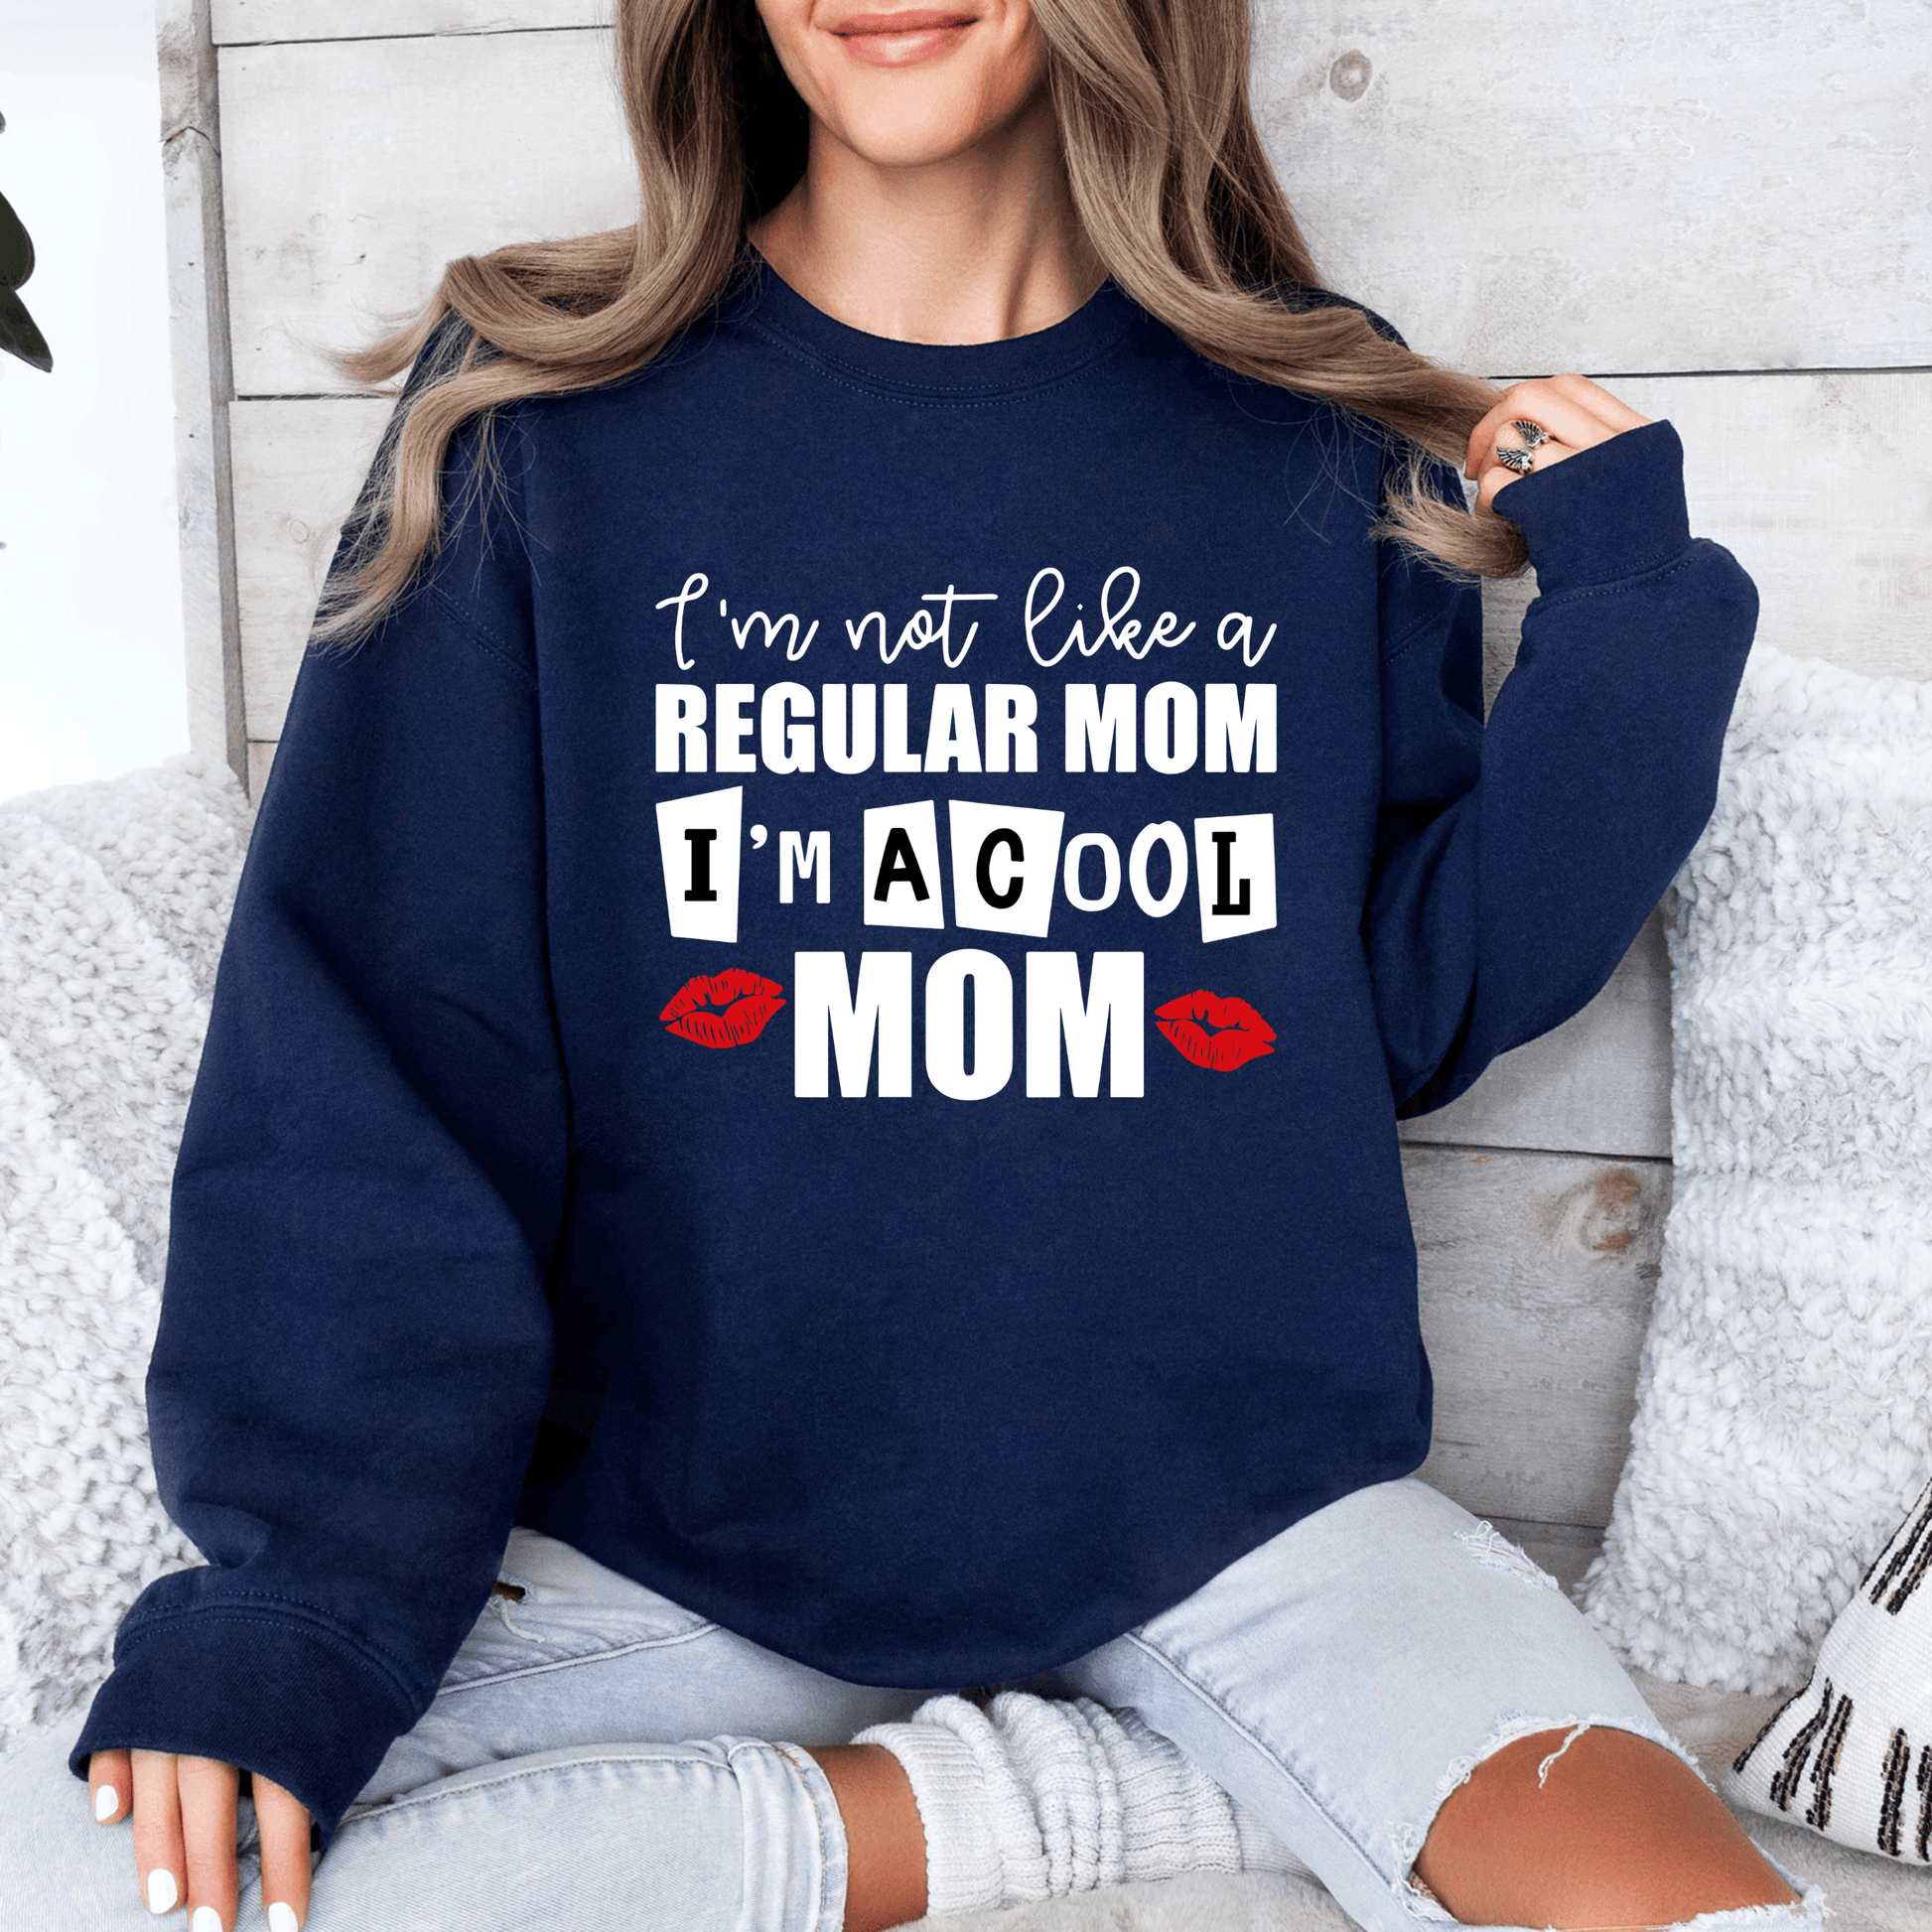 Stylisches 'Coole Mama' Sweatshirt - Ideal für Freizeit - Mit Witzigem Spruch - GiftHaus